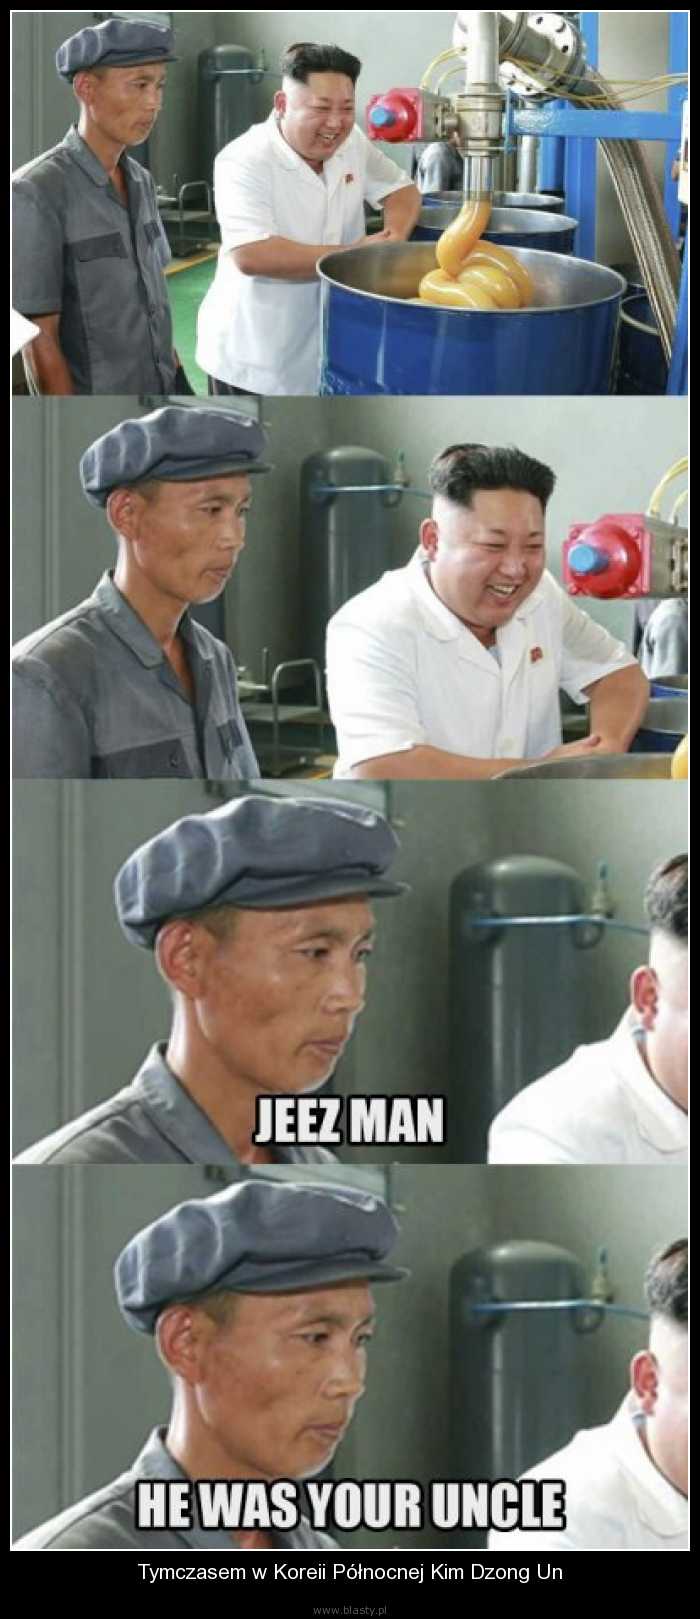 Tymczasem w Koreii Północnej Kim Dzong Un